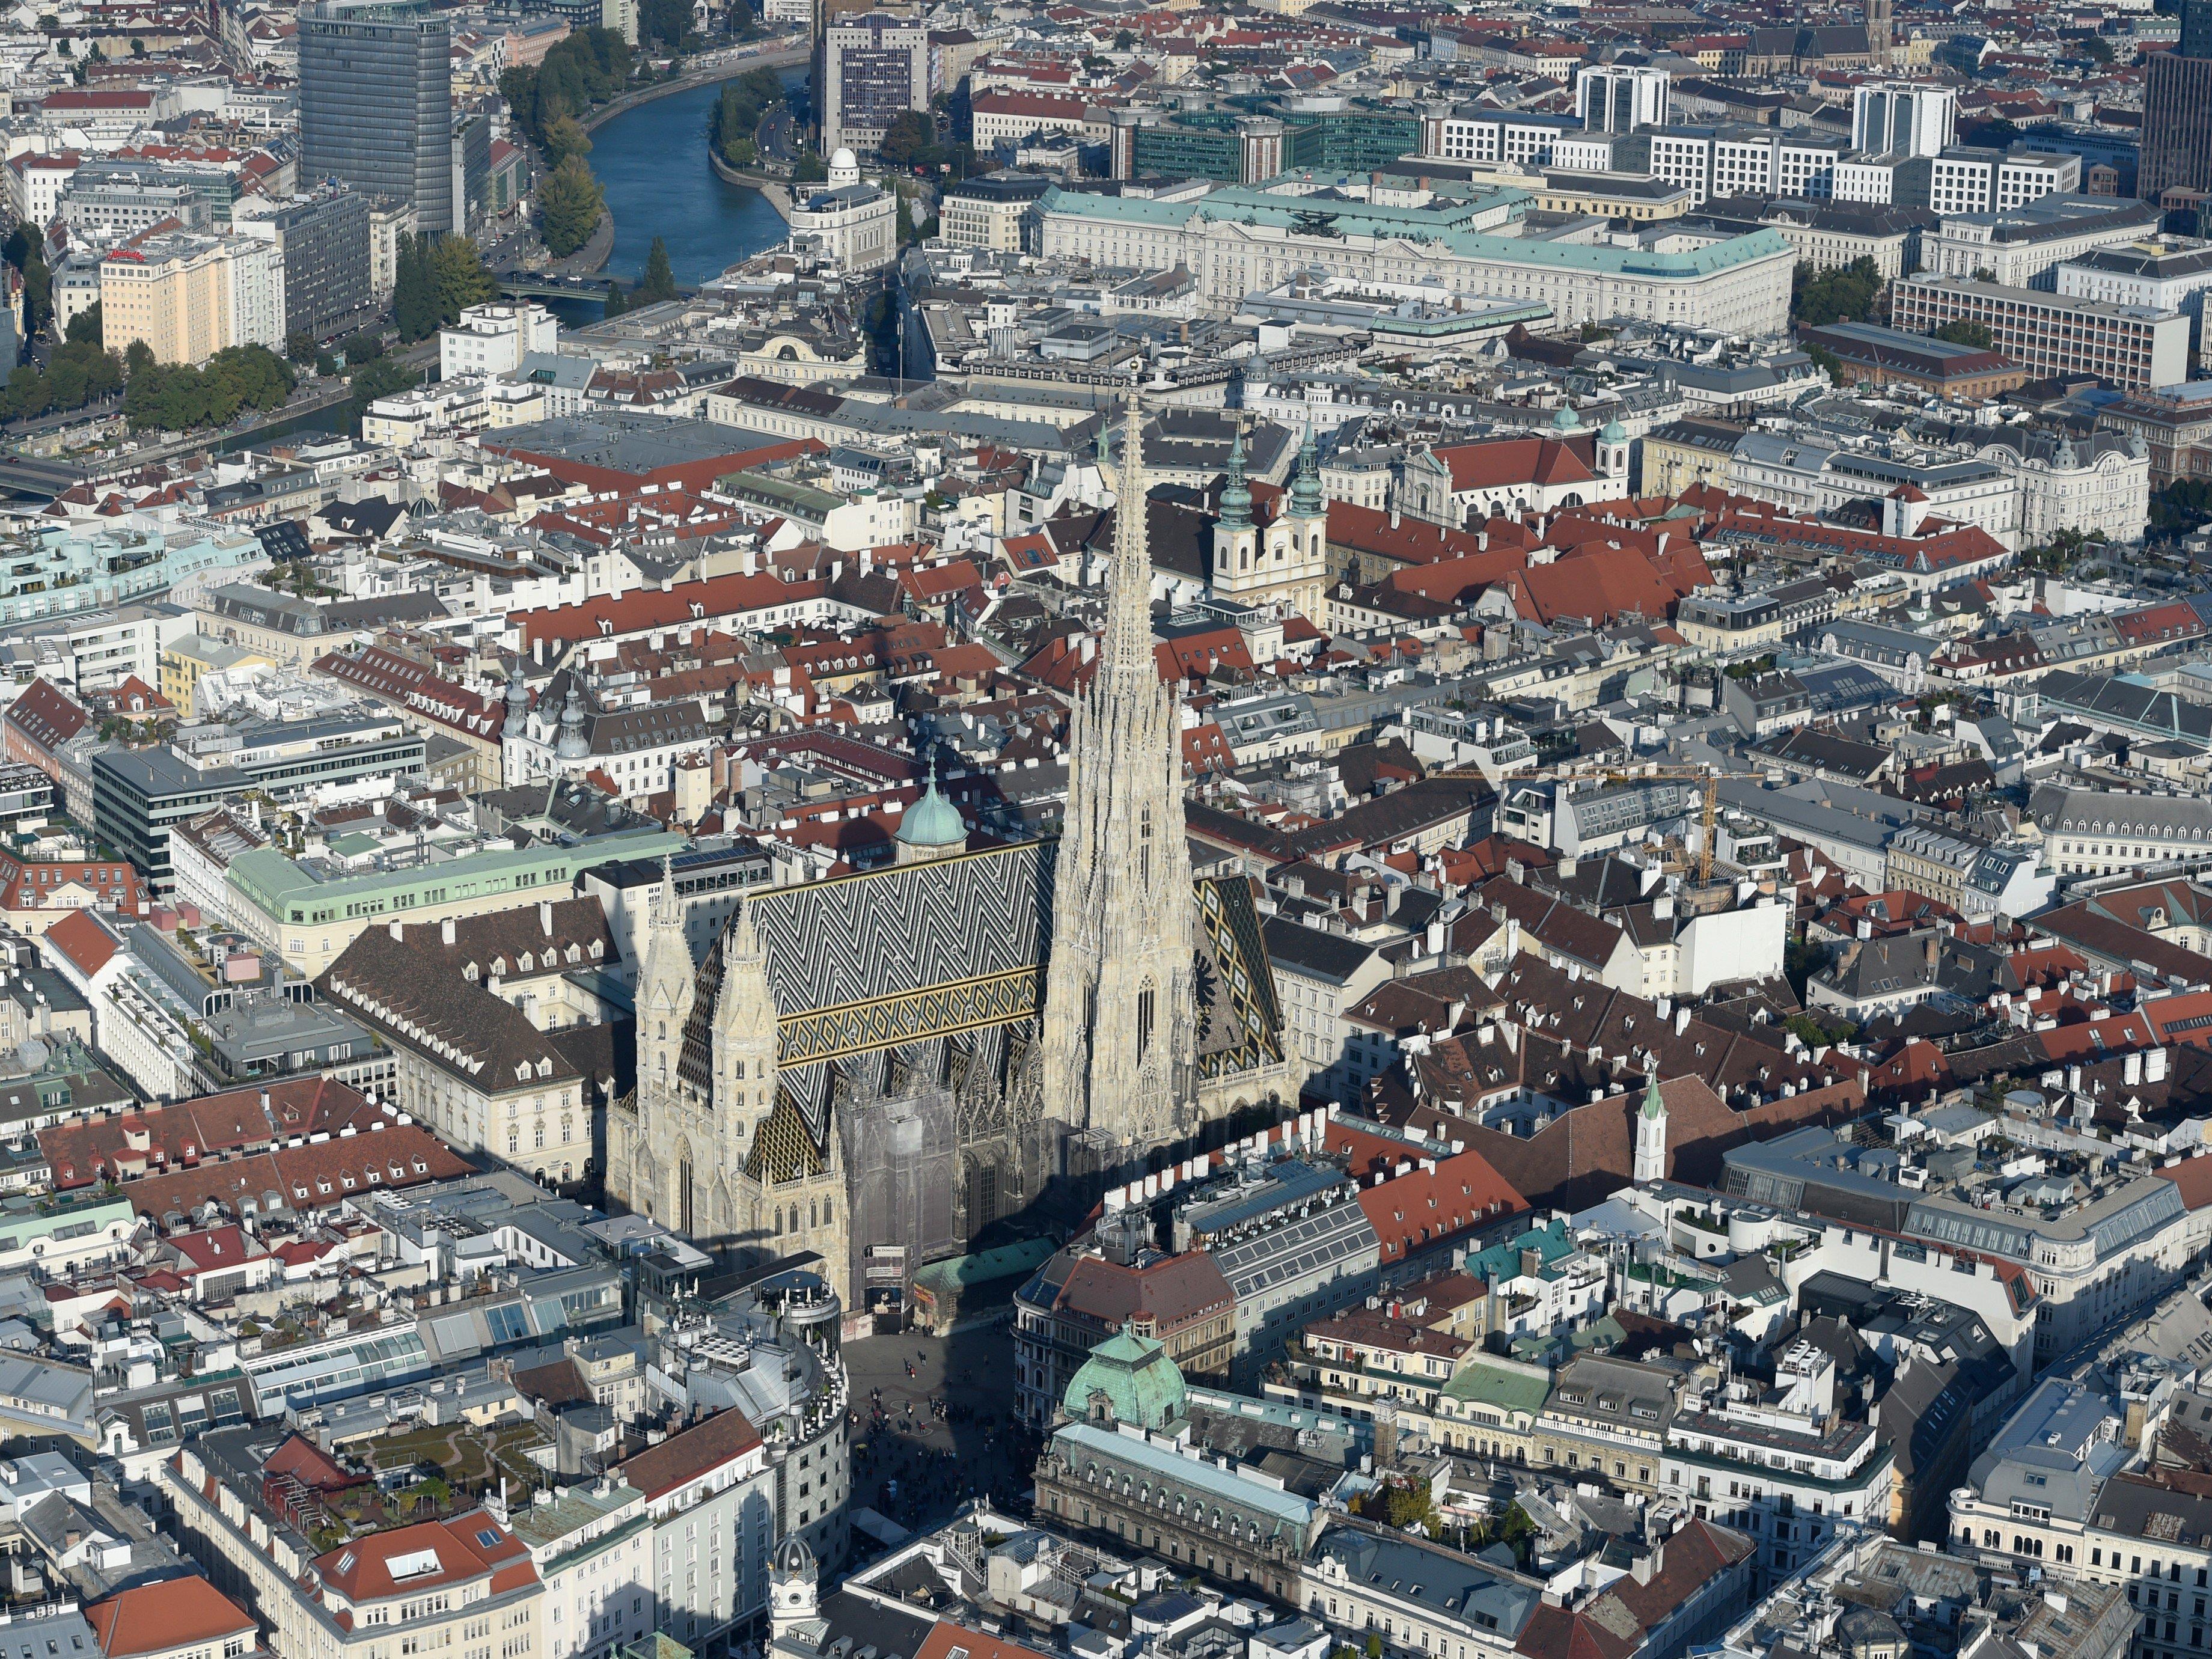 Wien hebt Gebühren für Wasser, Müll und Parken an